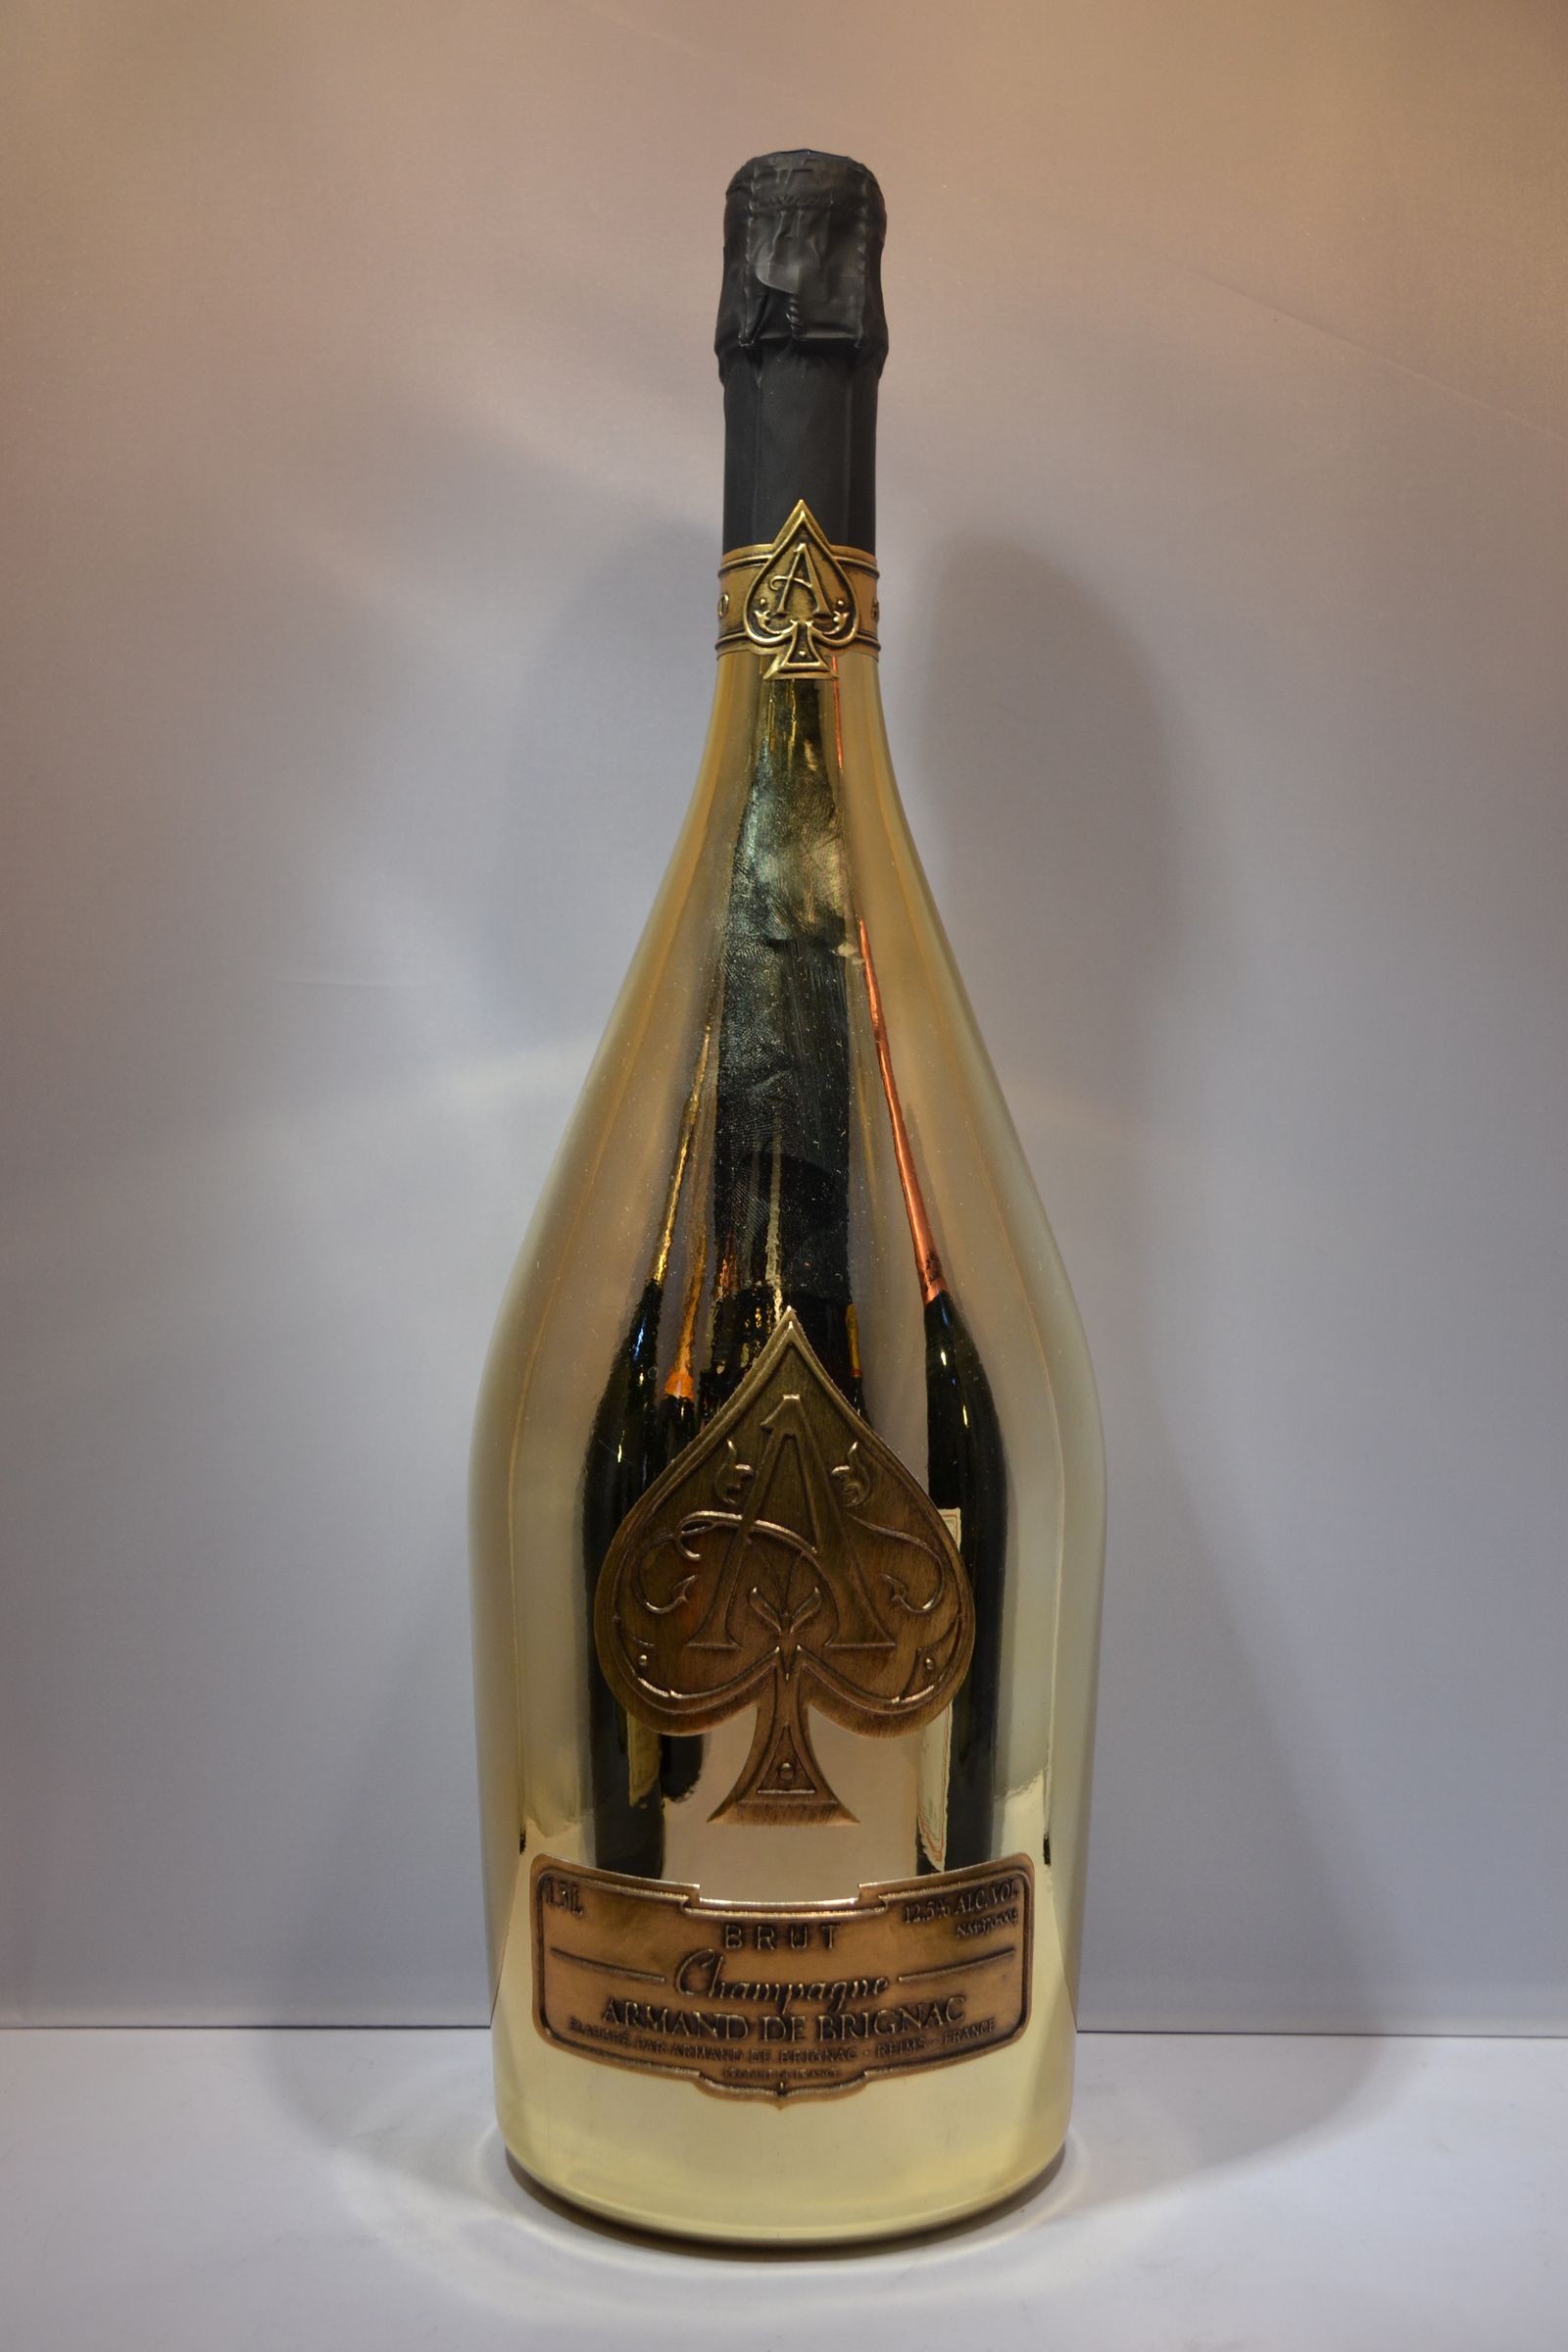 Armand de Brignac Ace Of Spades Champagne Brut Gold